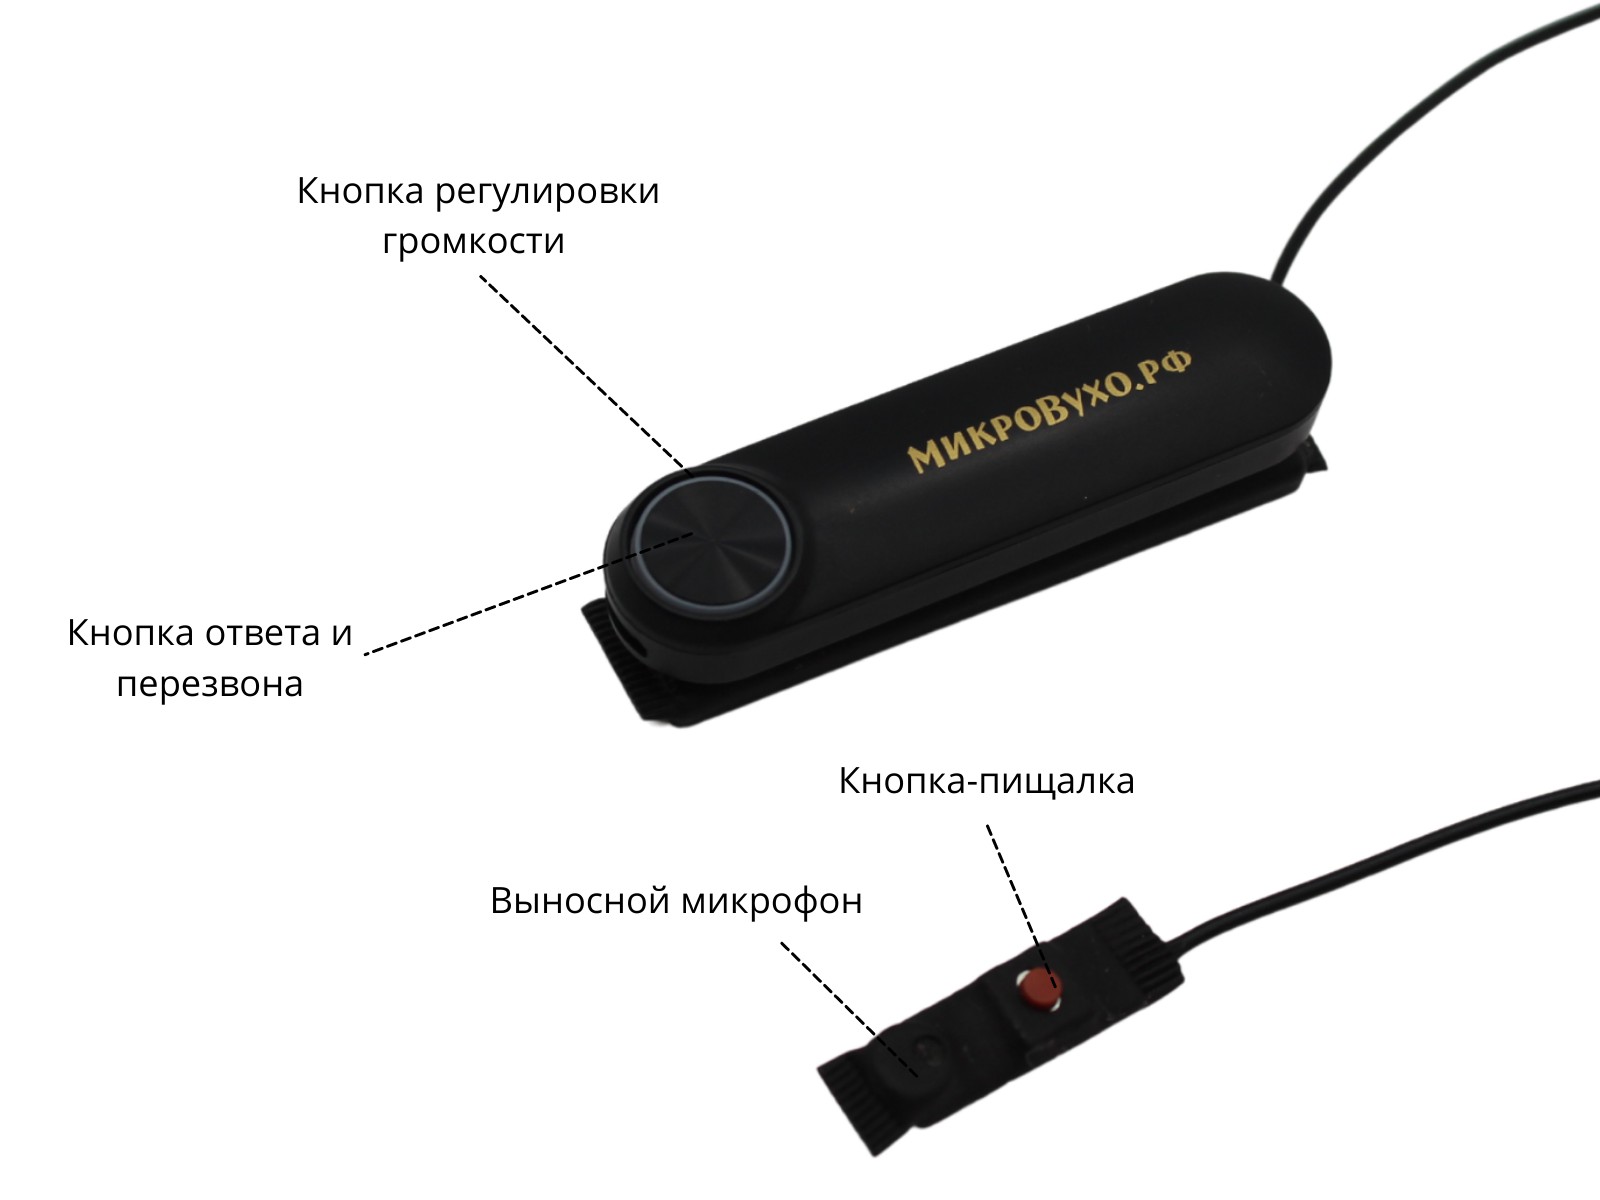 Универсальная гарнитура Bluetooth Box Standard Plus c капсулой Nano 4 мм и магнитами 2 мм 4